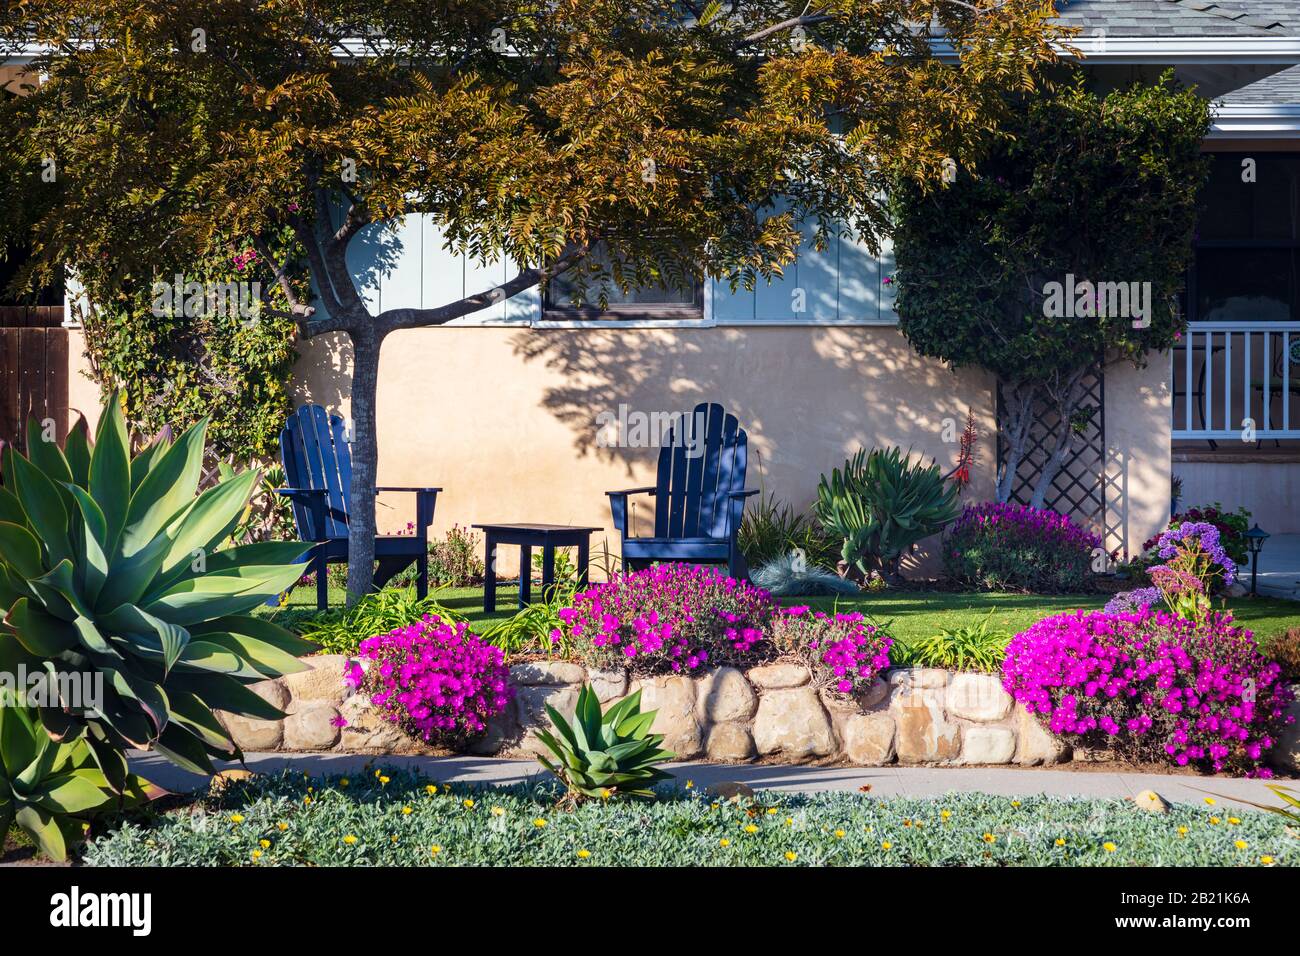 Ein Haus in Kalifornien mit zwei bemalten adirondack Stühlen und schöner, individueller Landschaftsgestaltung. Im Februar 2020 aus einem öffentlichen Raum übernommen. Stockfoto